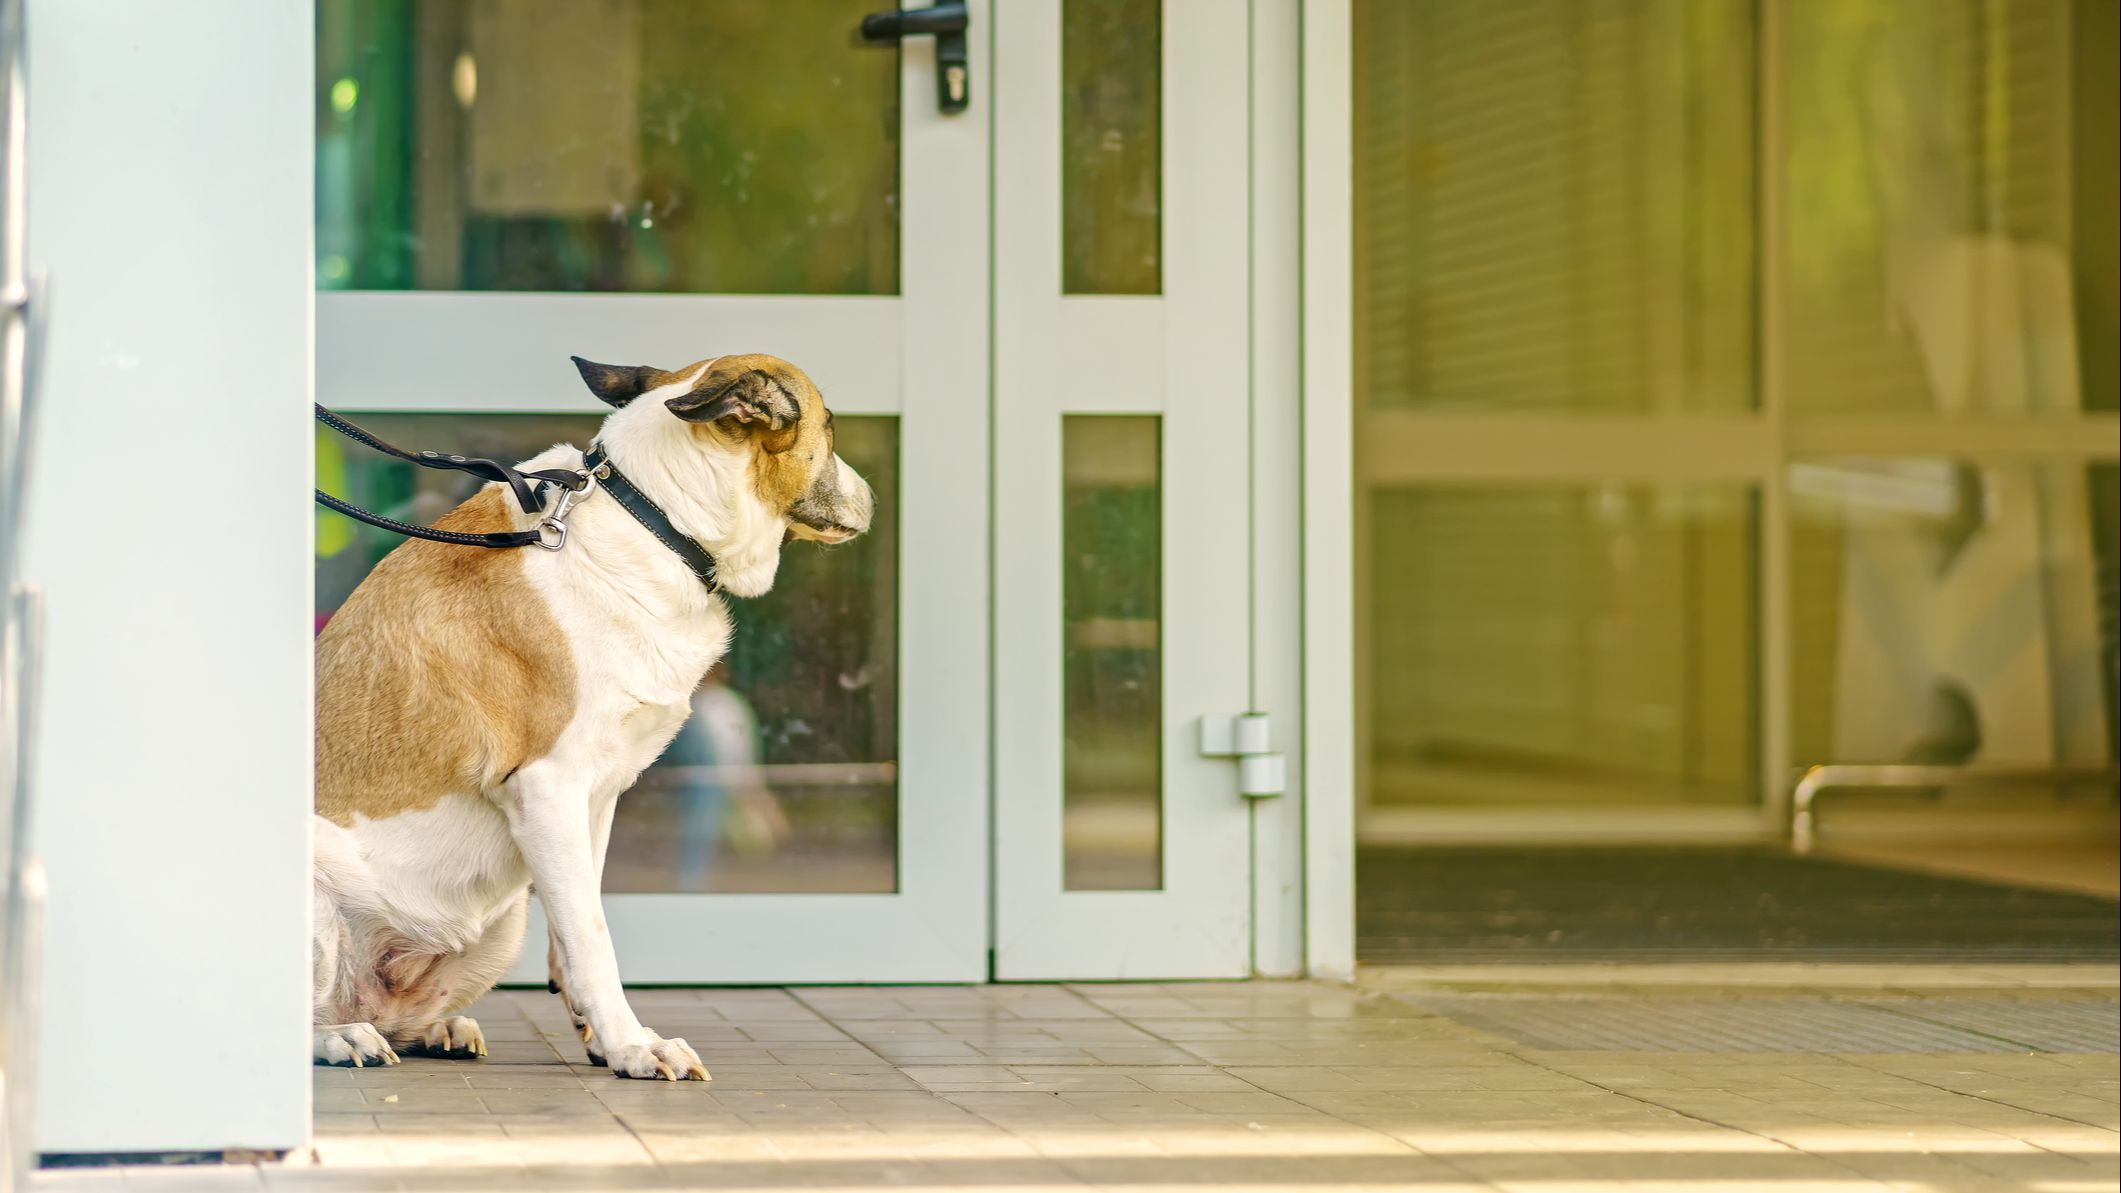 Primera multa por la ley de Bienestar animal: 500 euros por dejar al perro atado en la puerta de la farmacia